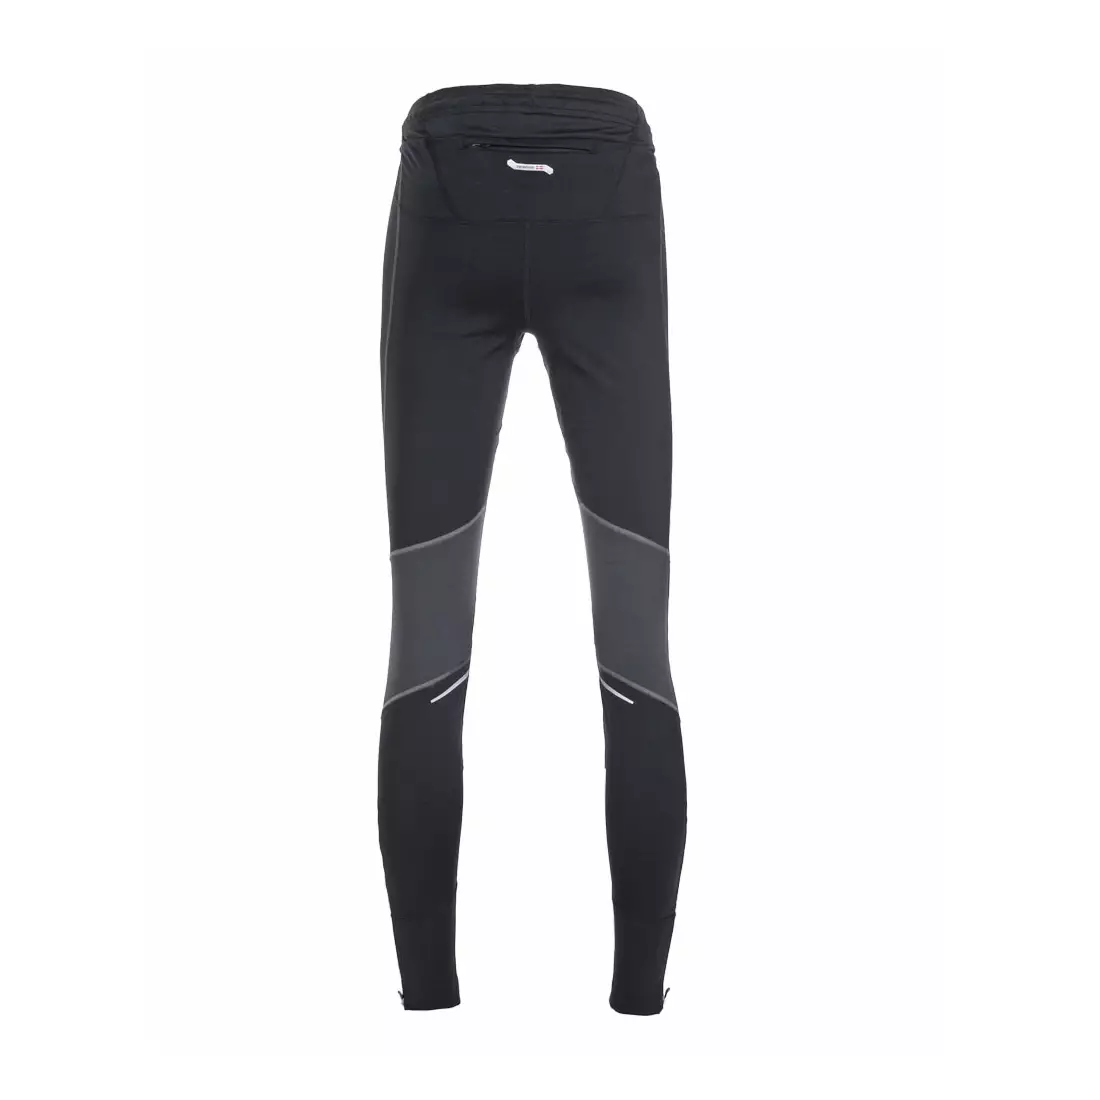 NEWLINE ICONIC PROTECT TGHTS 10132-060 - pantaloni izolați pentru alergare pentru femei, culoare: Negru